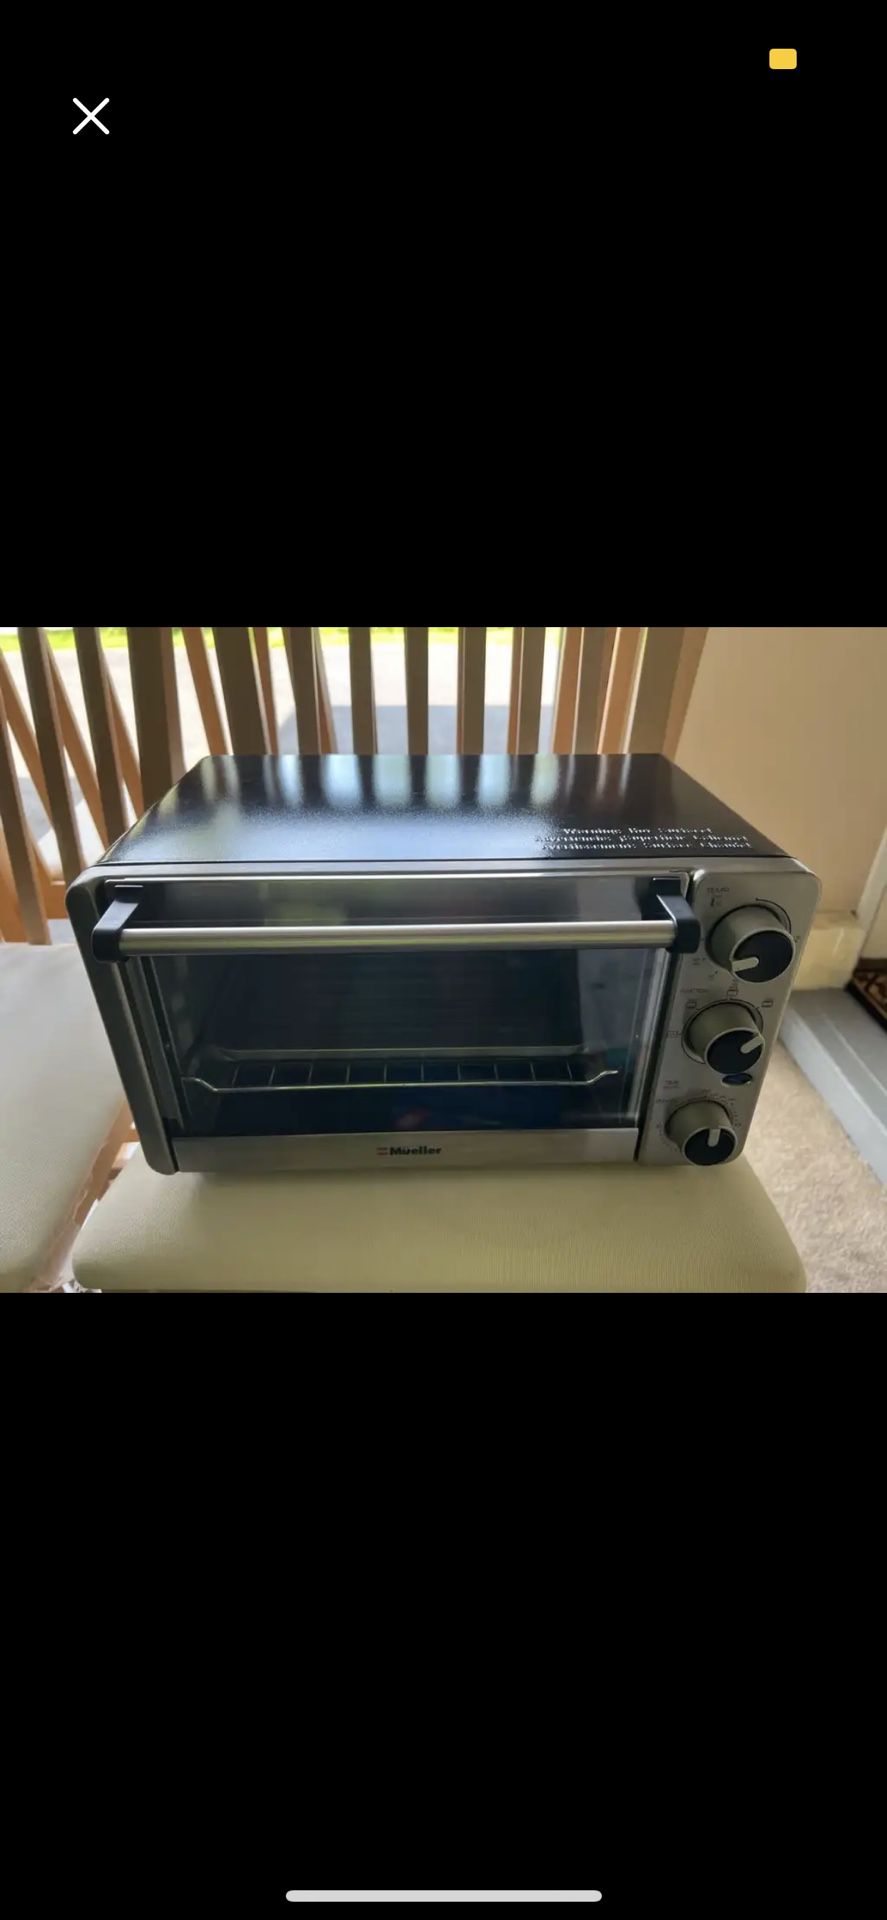 Mueller AeroHeat Convection Toaster Oven, 8 Slice, Broil, Toast